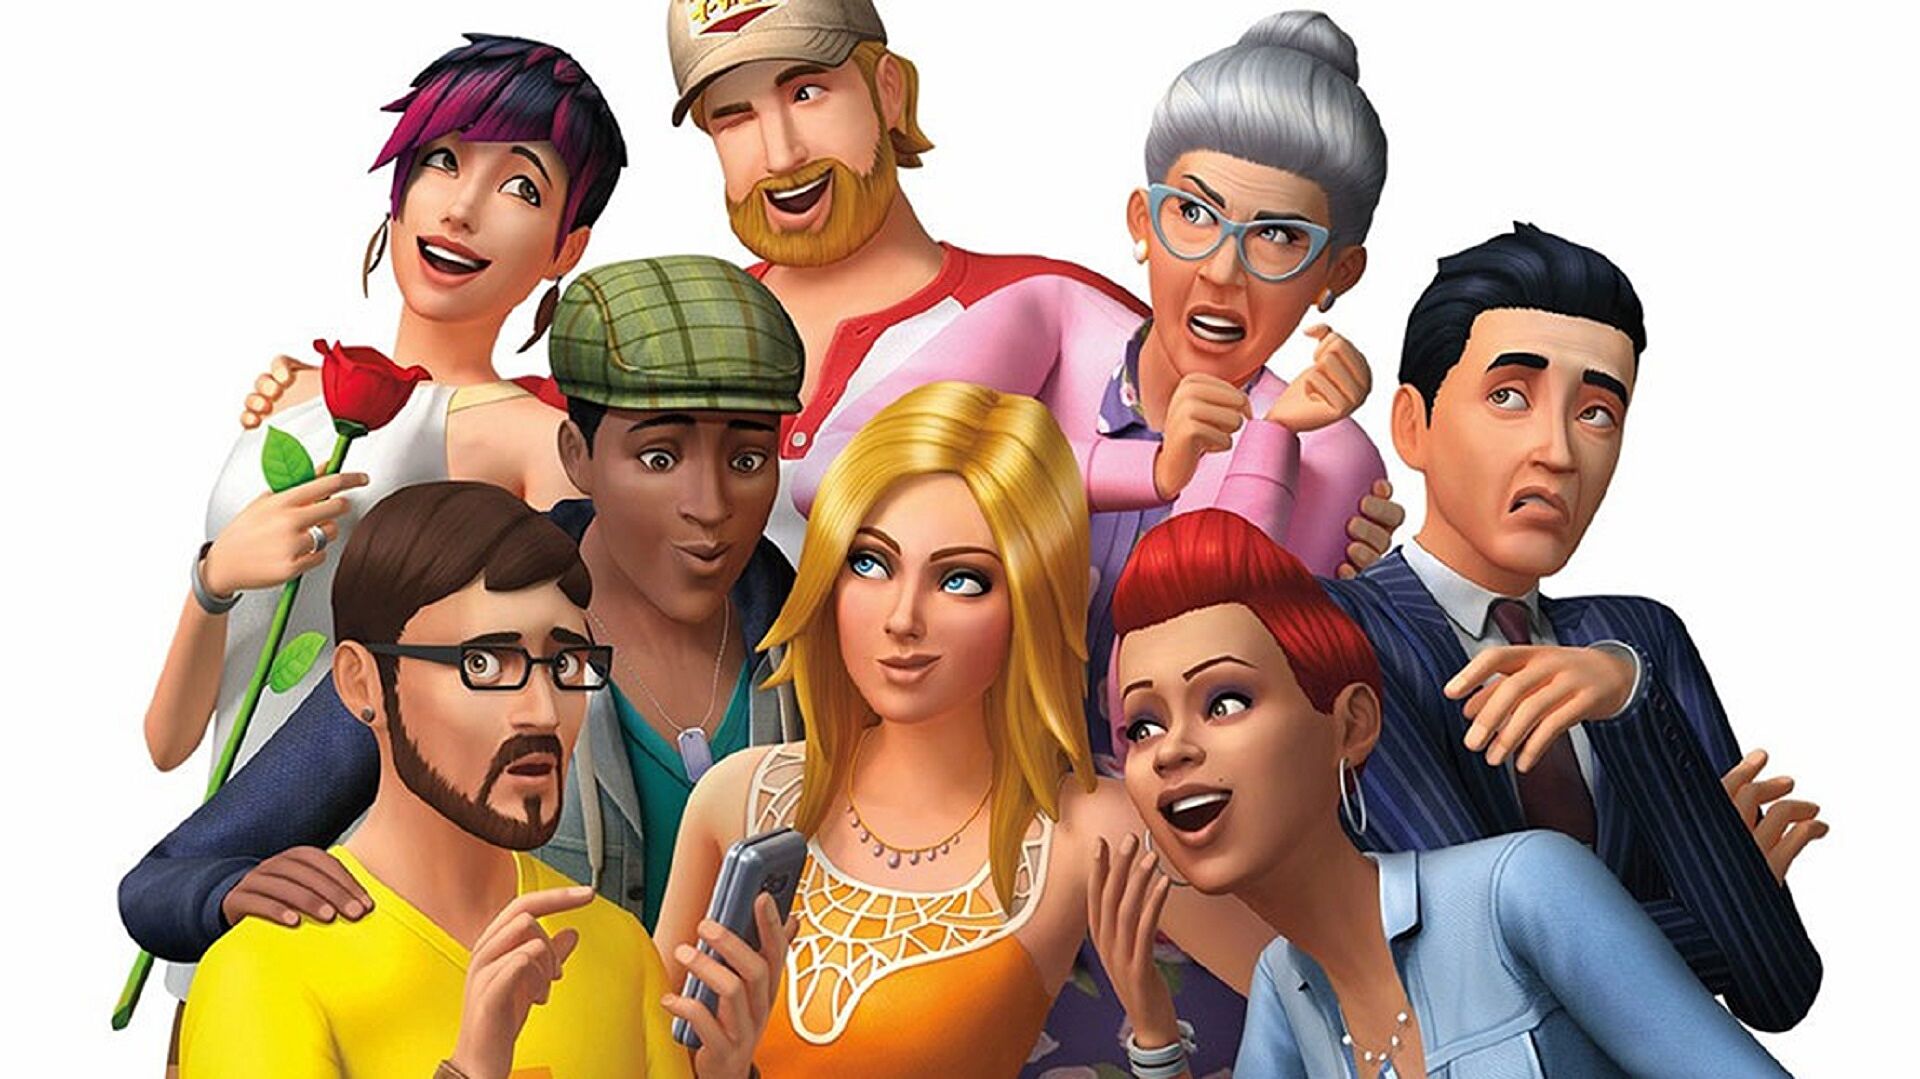 แจกสูตรเกม The Sims 4 ทุกหมวด ตั้งแต่เงิน, ทักษะ ยันสร้างบ้าน สำหรับ Xbox, Ps4, Ps5 และ Pc